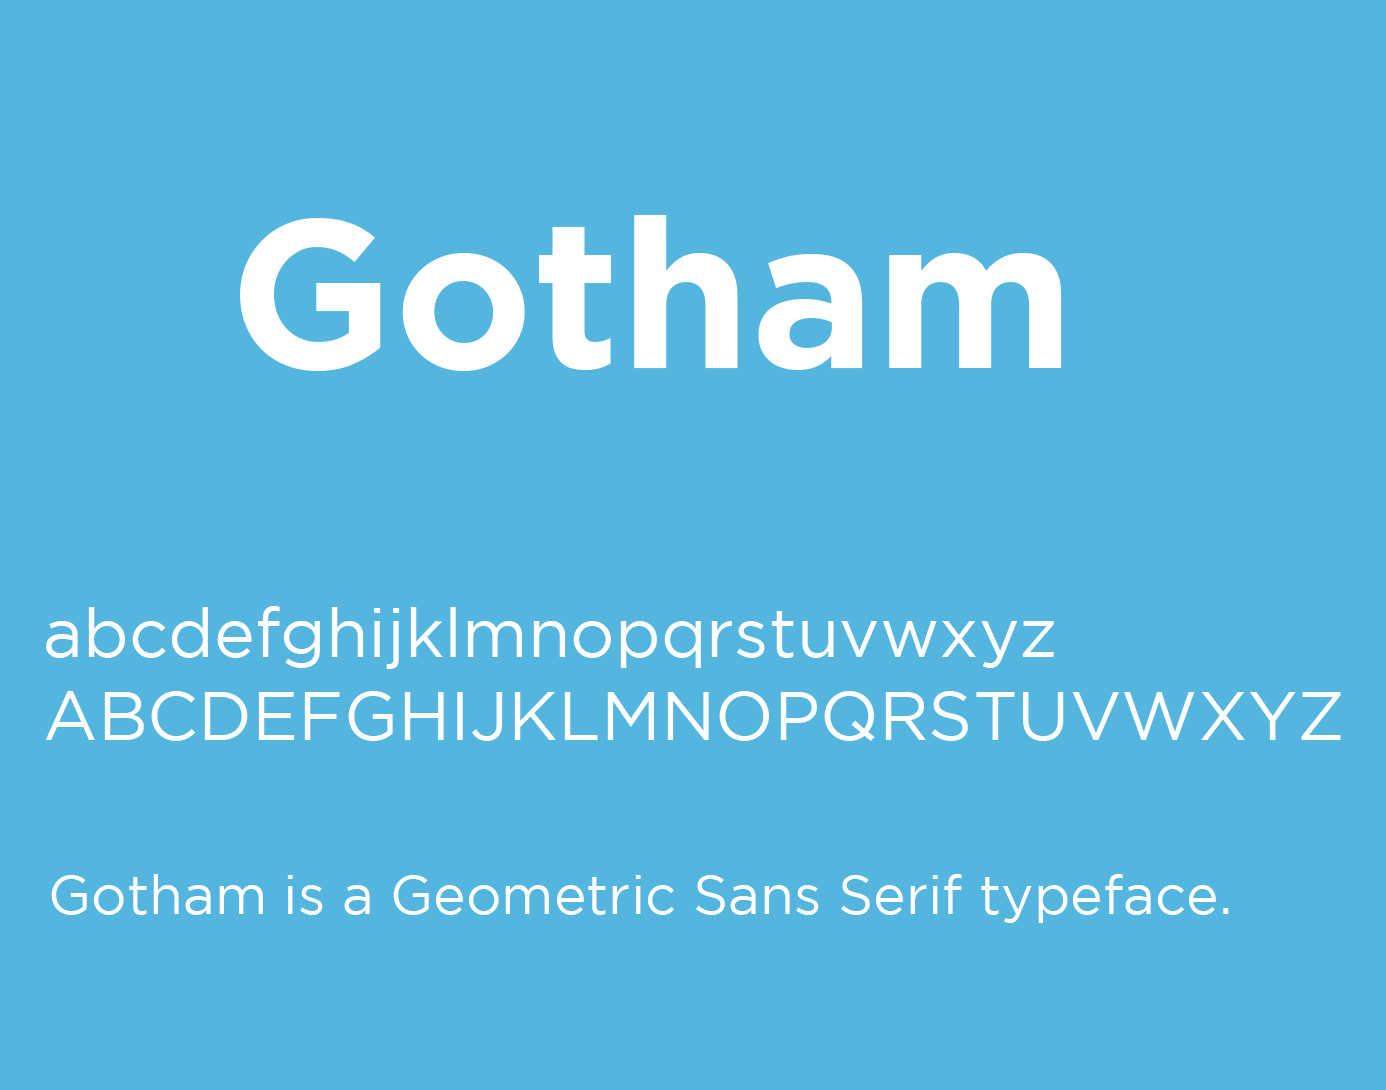 Beispiel einer Gotham-Schriftart